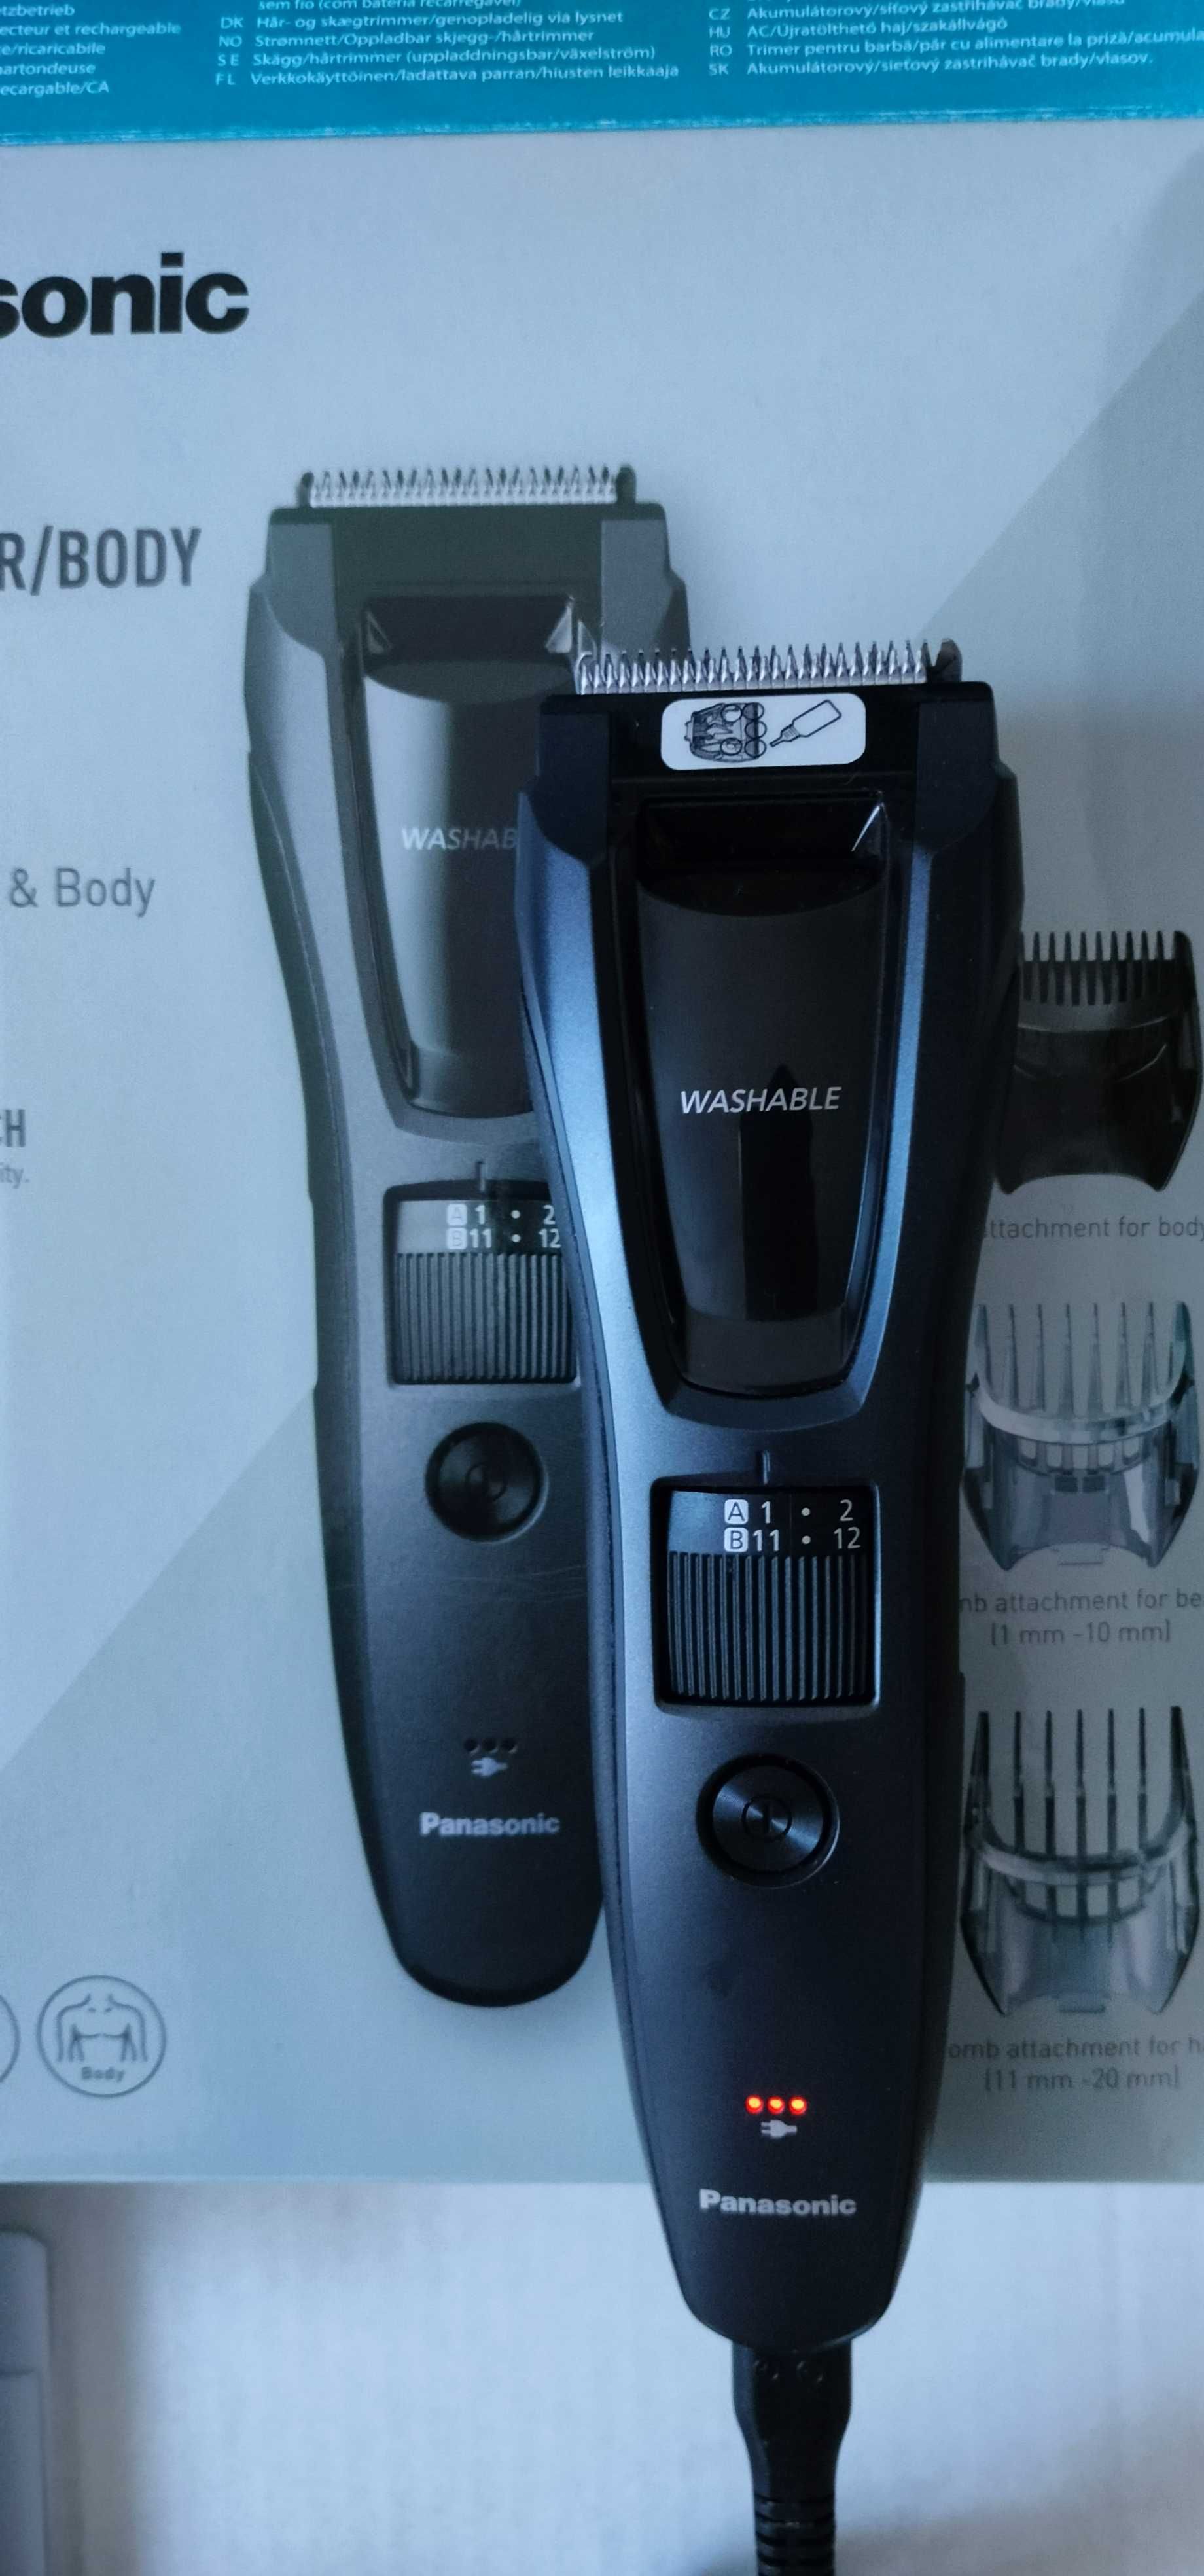 Maszynka do włosów i ciała Panasonic model GB62